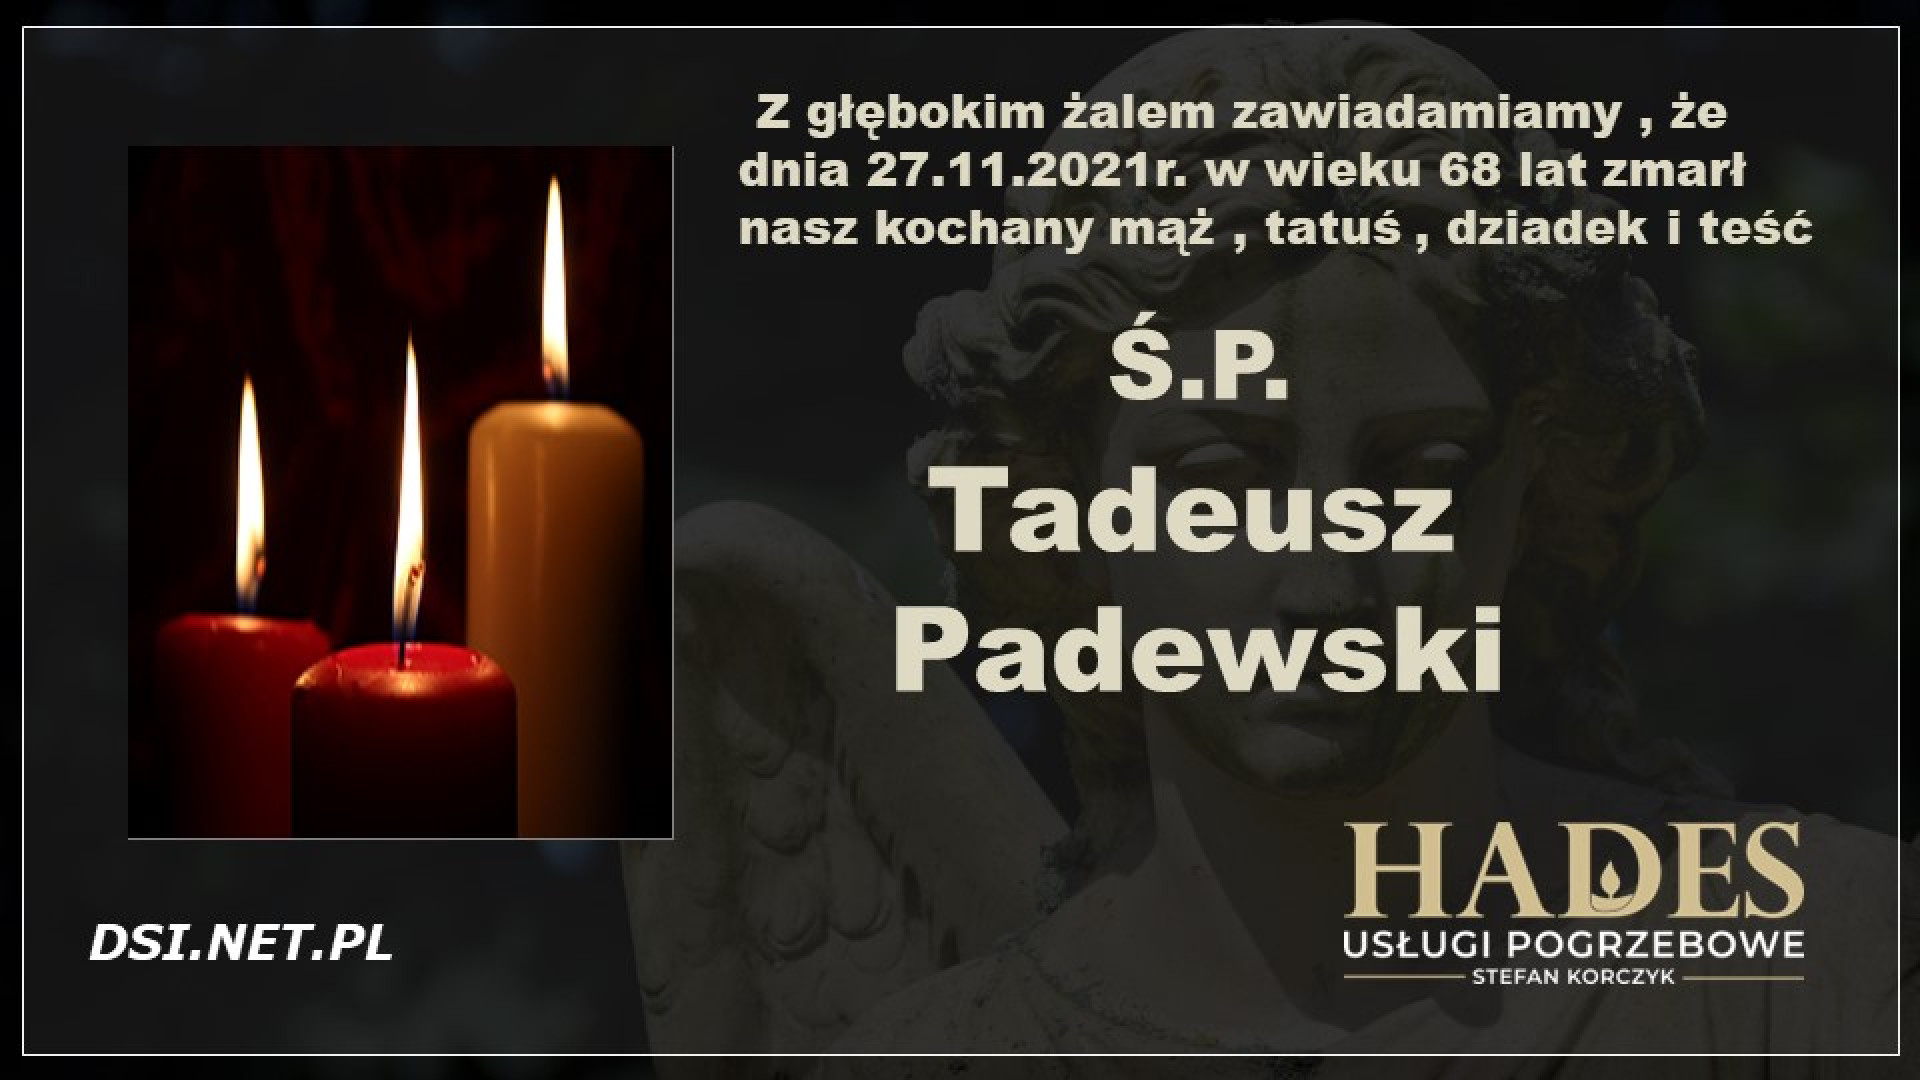 Ś.P. Tadeusz Padewski